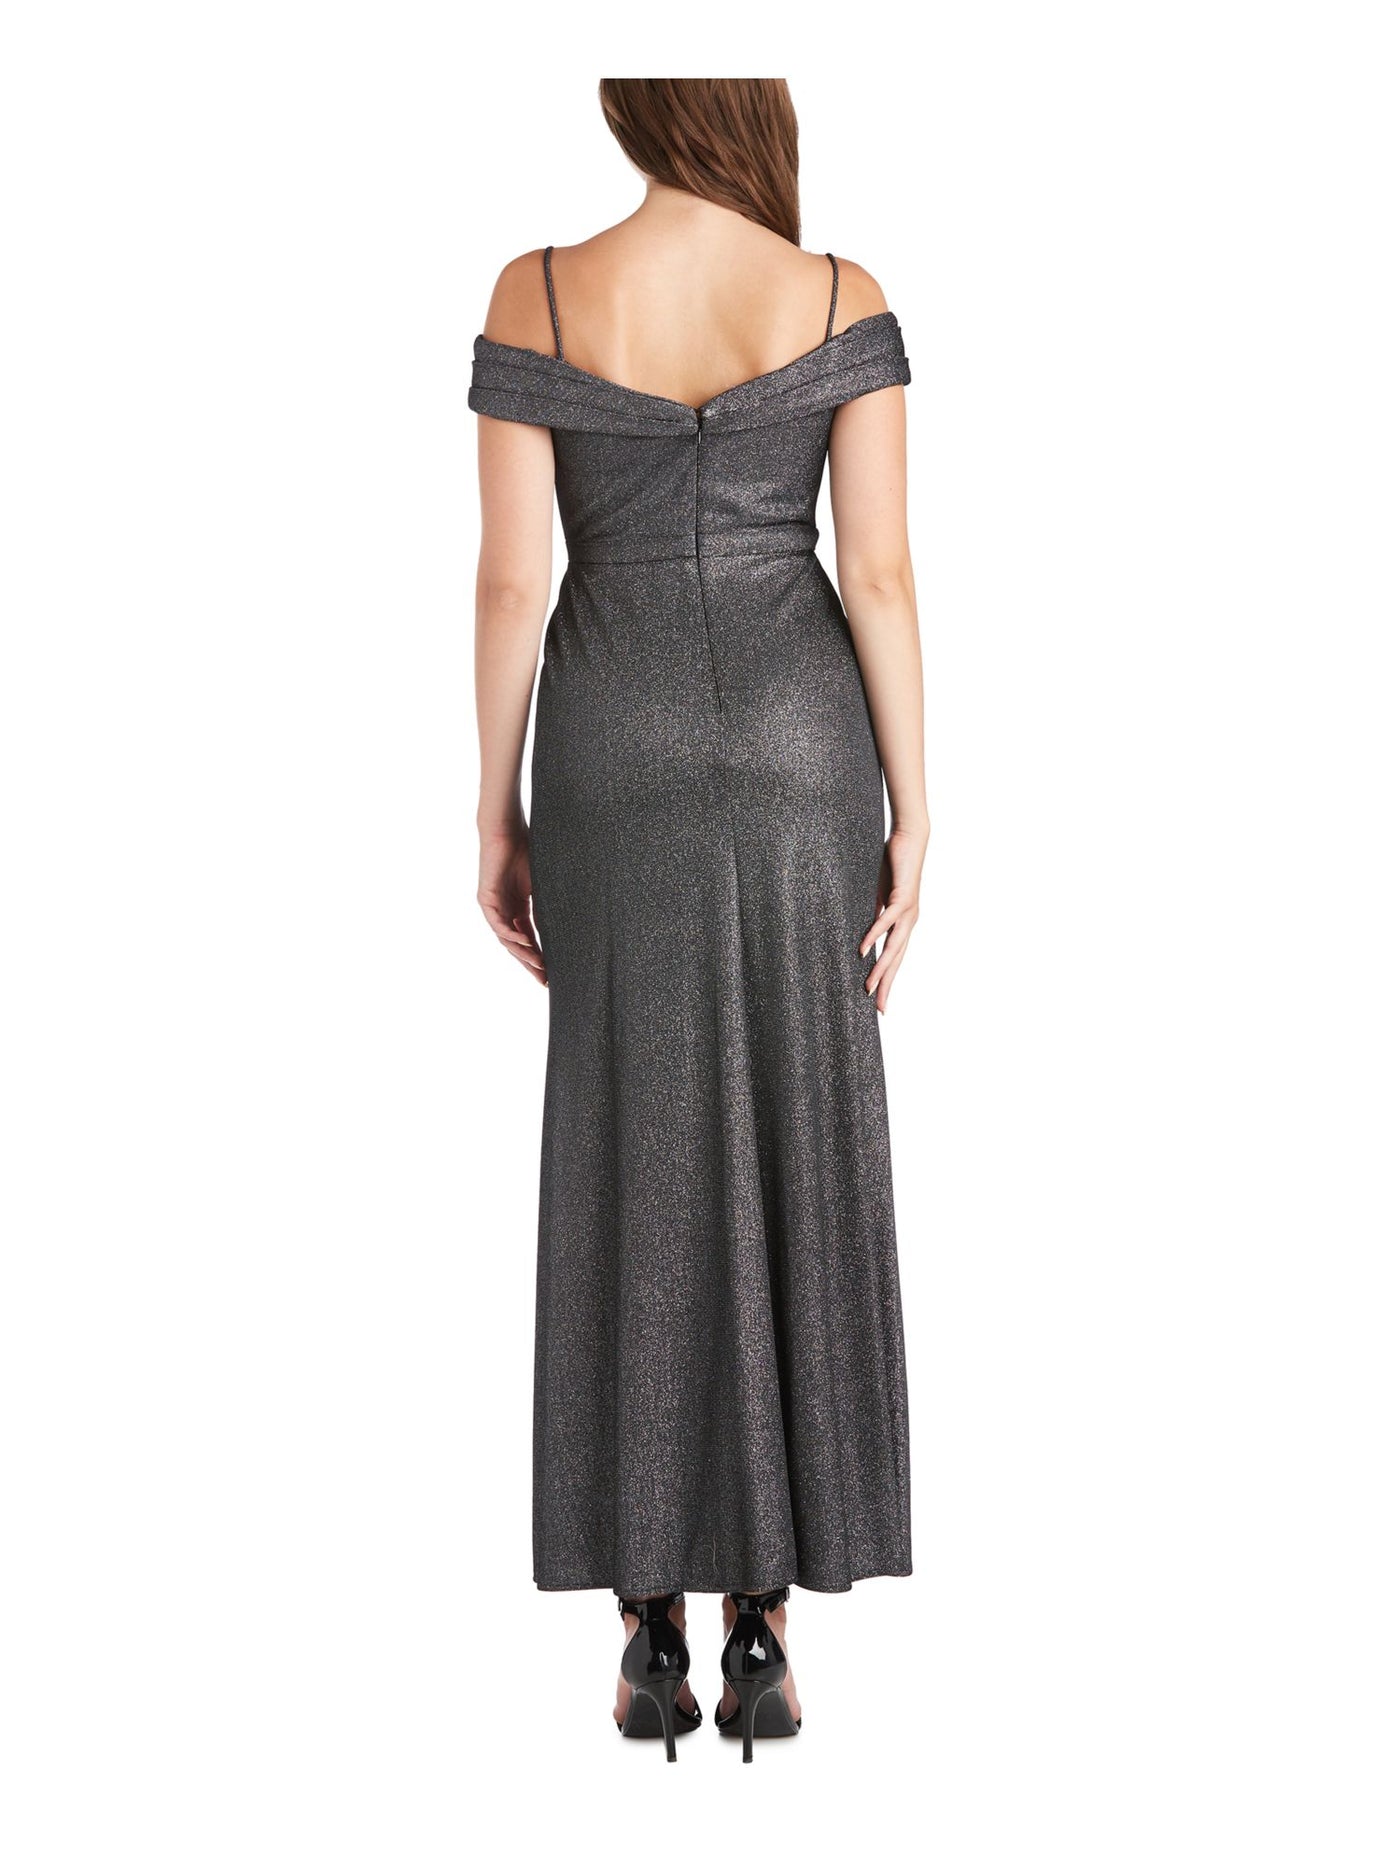 MORGAN & CO Womens Gray Slitted Glitter Sleeveless Off Shoulder Full-Length Formal Sheath Dress 11